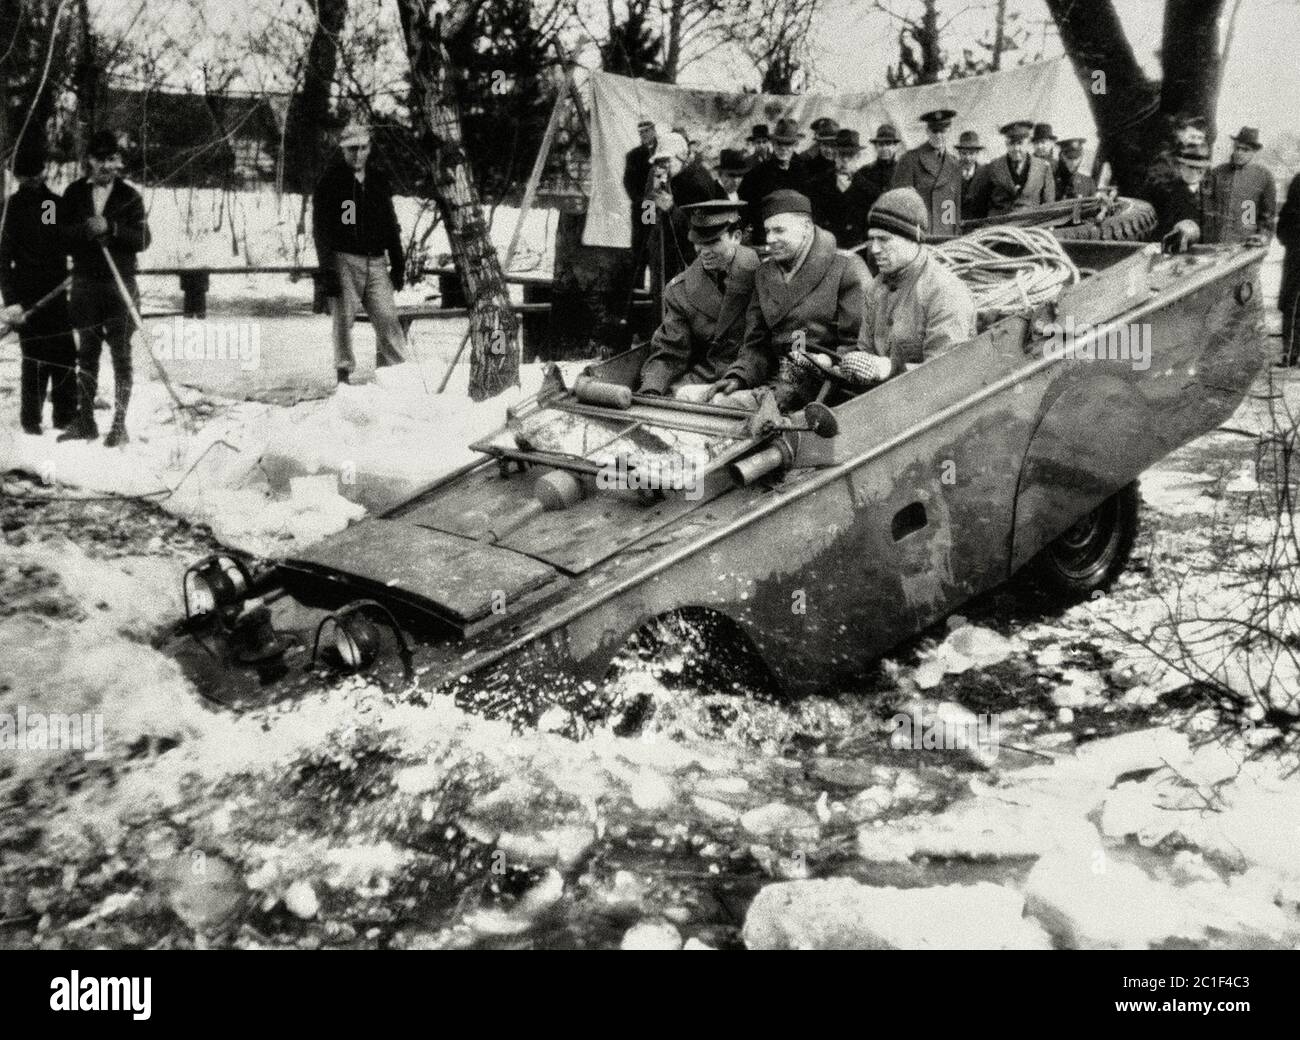 1943, marzo 23. Uno dei nuovi prodotti - una jeep anfibia prodotta per l'esercito americano, scivola in acqua ghiacciata per i test, nella zona di Detroit Foto Stock